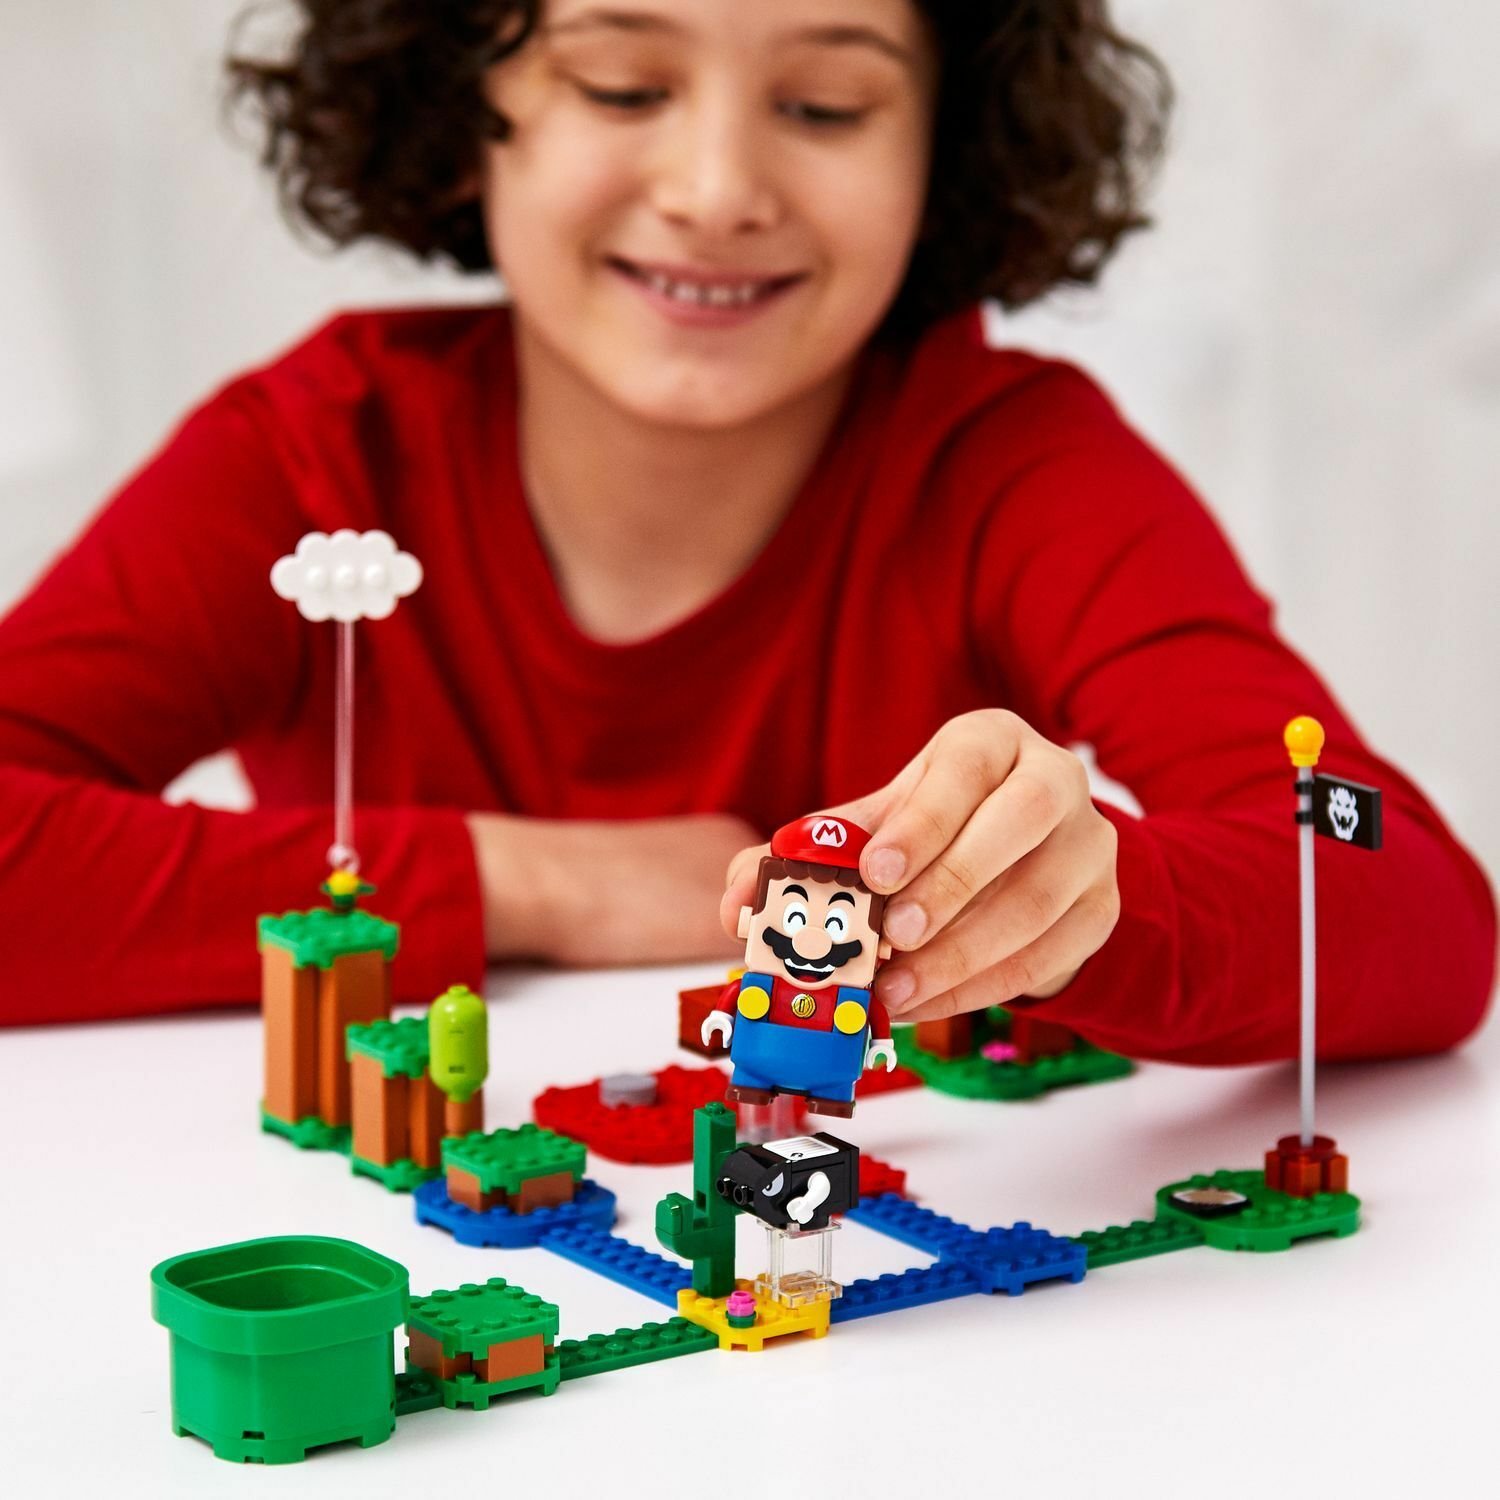 Конструктор LEGO Super Mario 71361 Фигурки персонажей